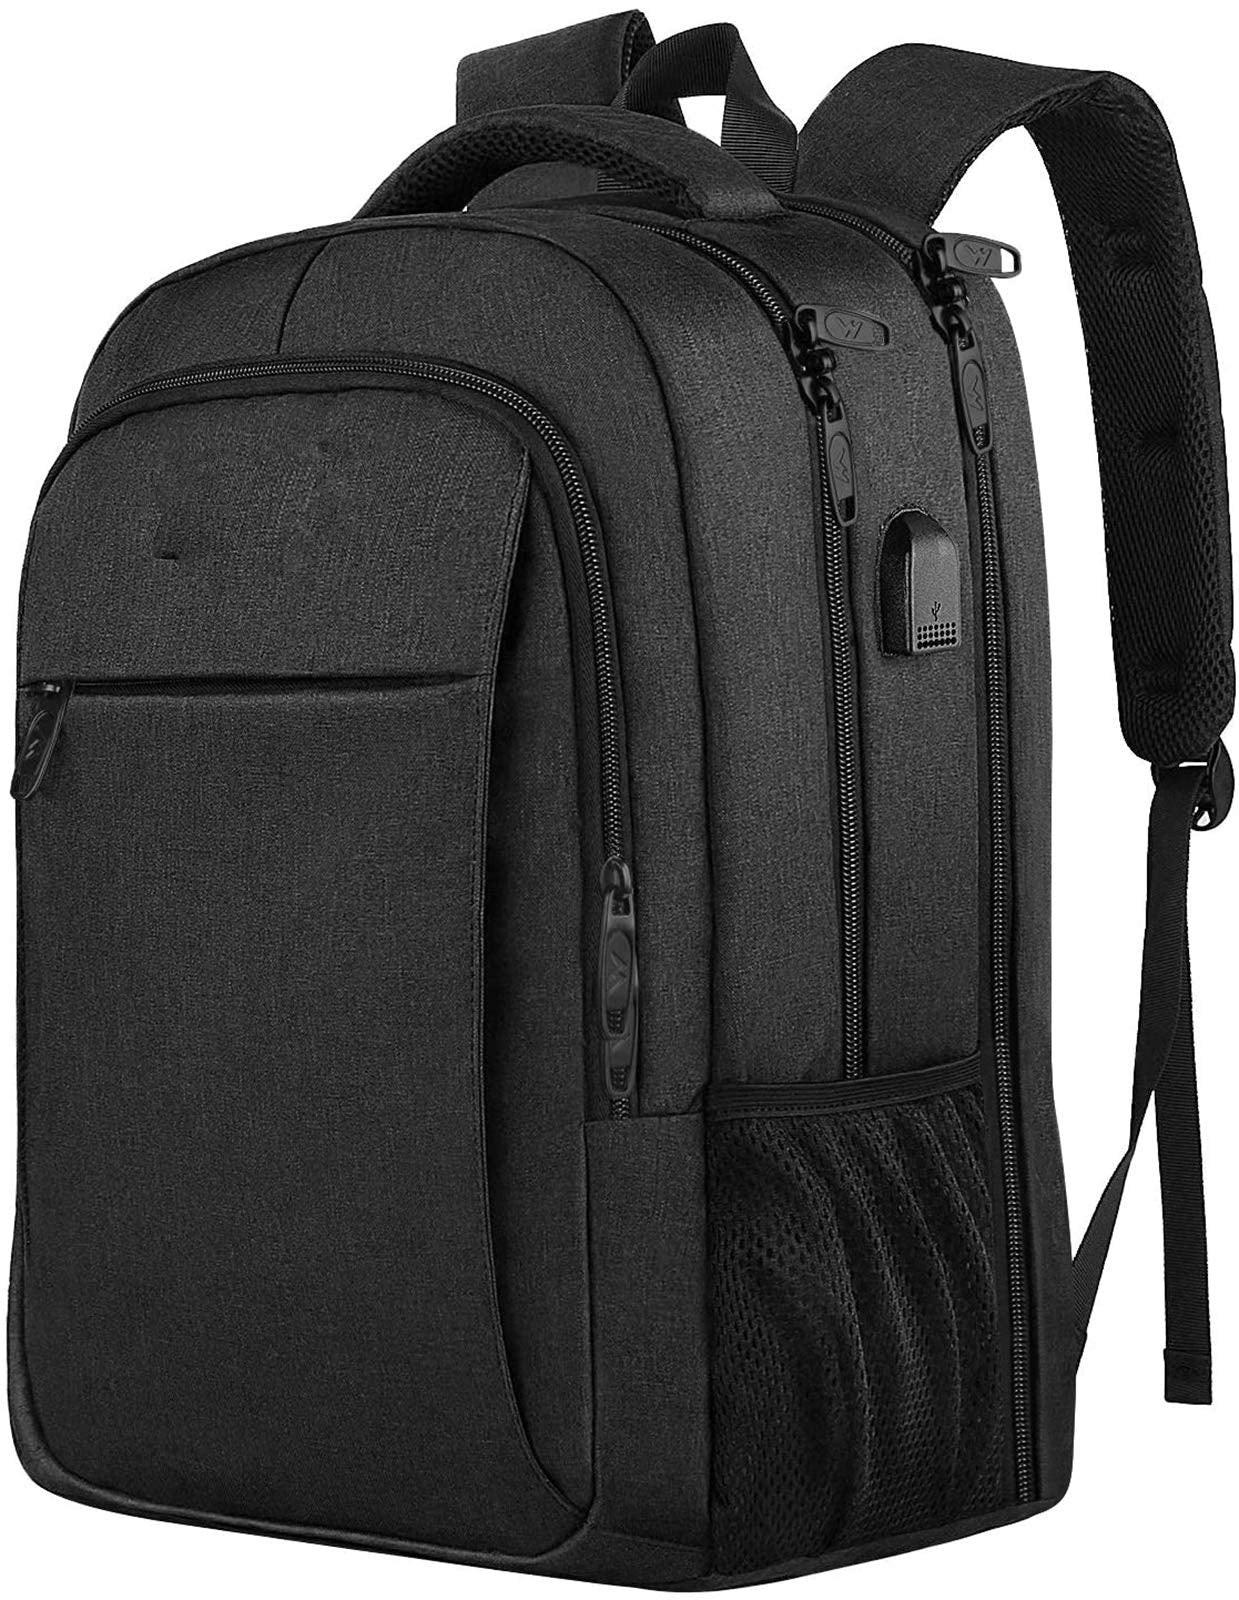 Only-bags.store Sac à dos, grand sac à dos pour ordinateur portable pouces sac à dos scolaire sacoche pour ordinateur portable avec port de charge USB antivol  